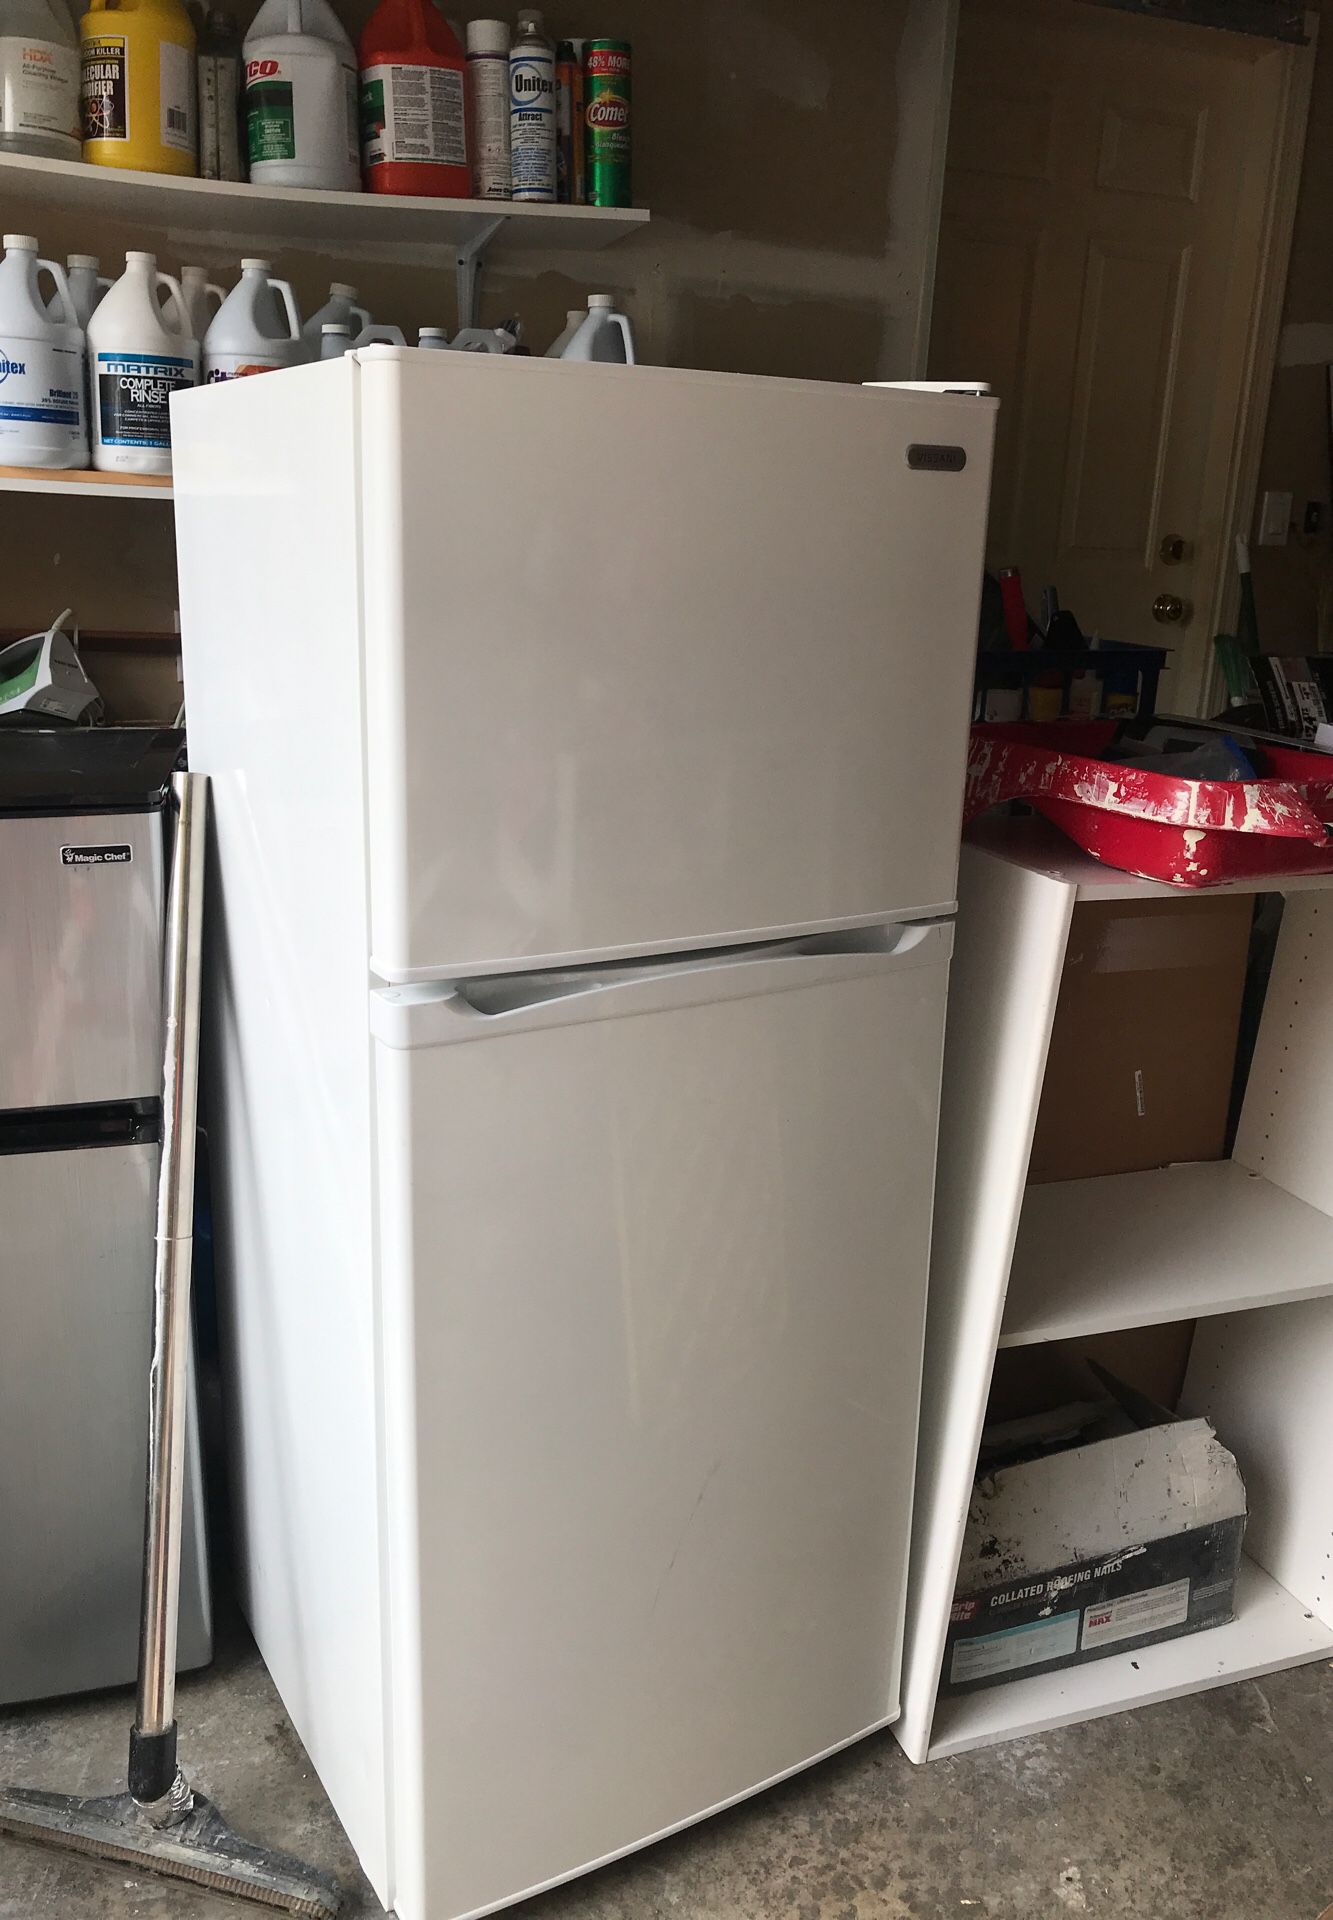 Median refrigerator